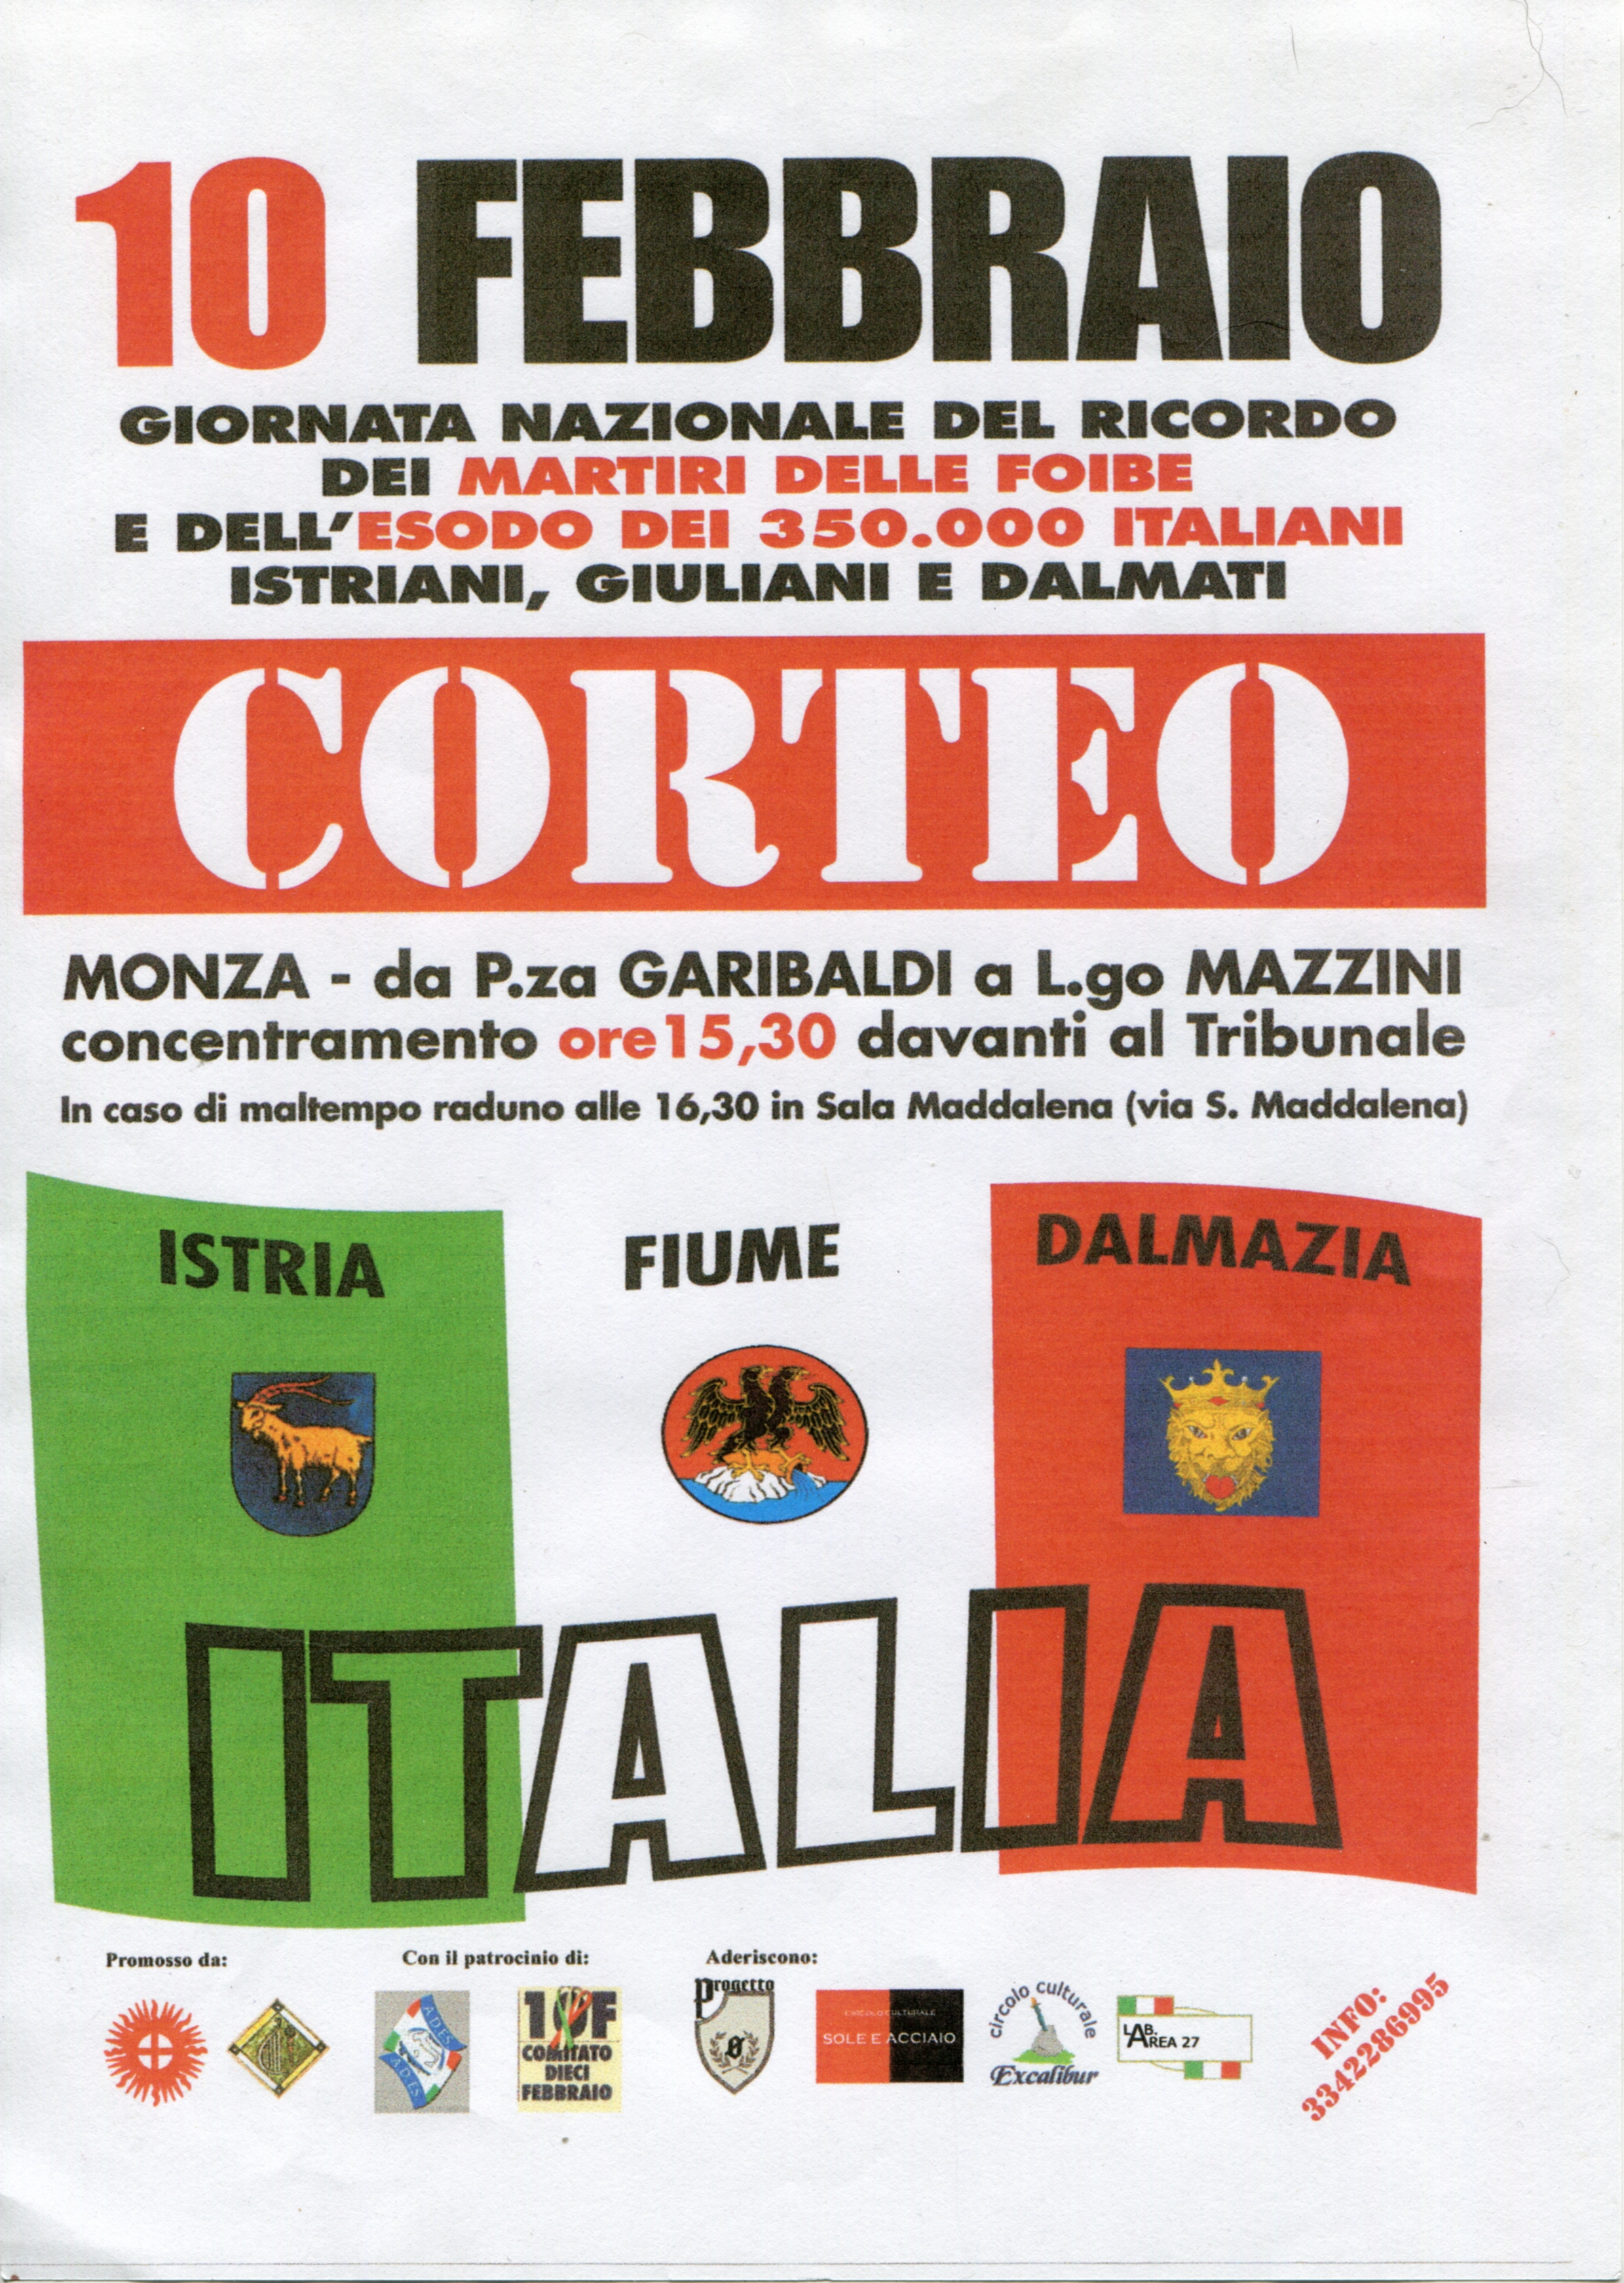 10 febbraio 2007 Monza - Corteo per le Foibe